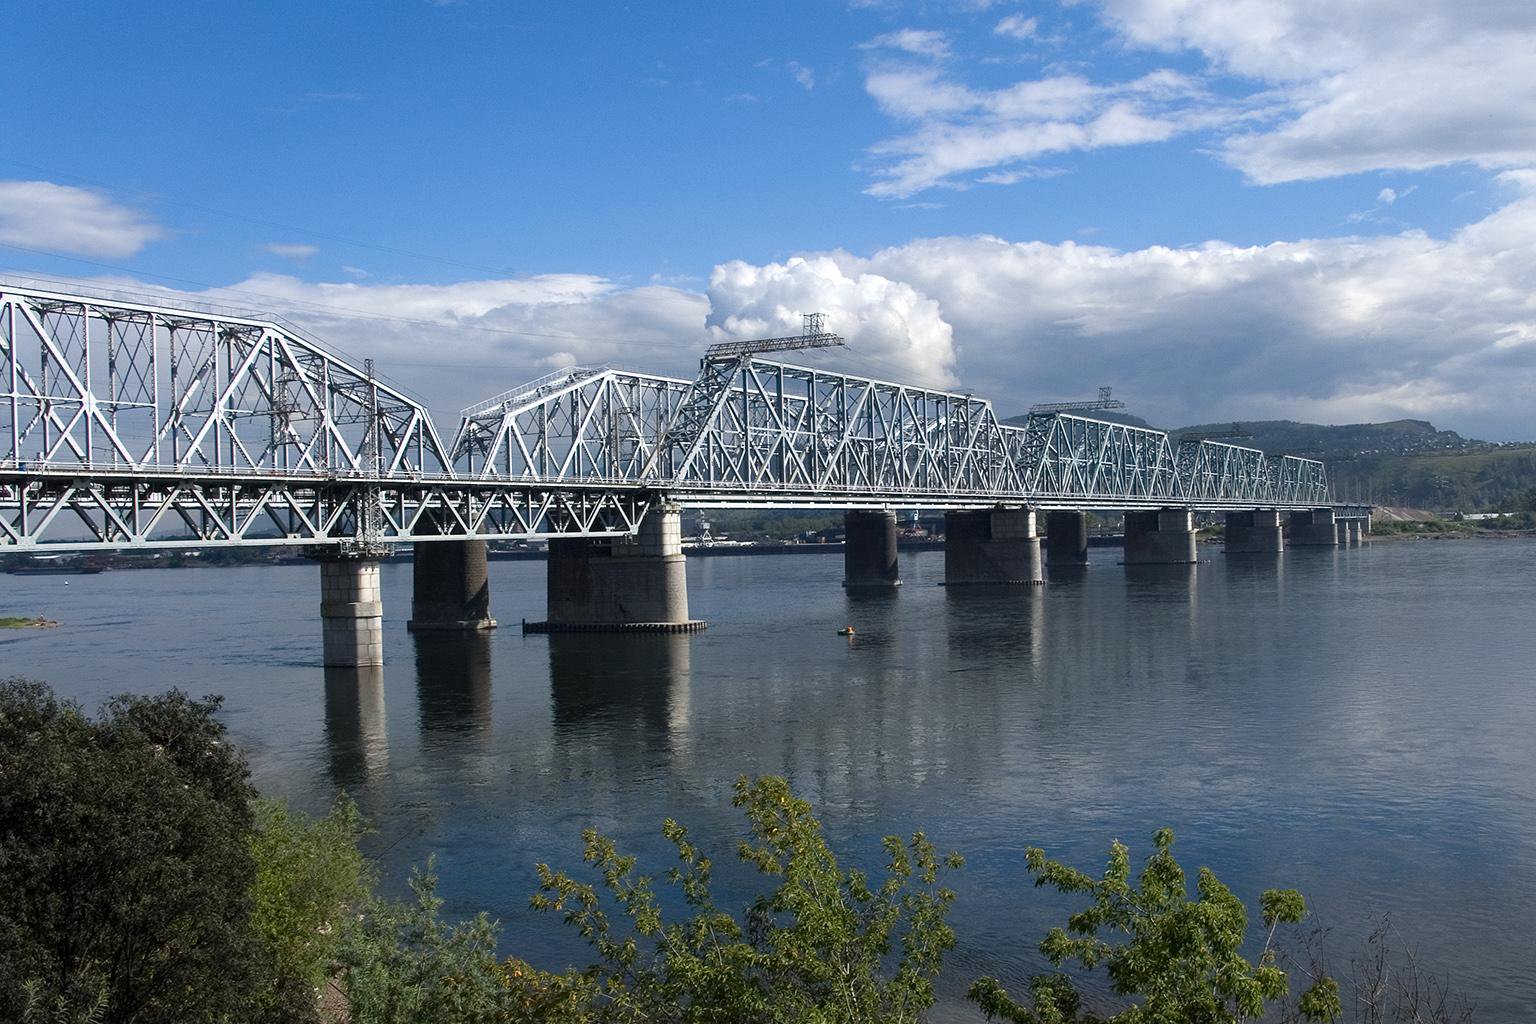 железнодорожный мост в красноярске